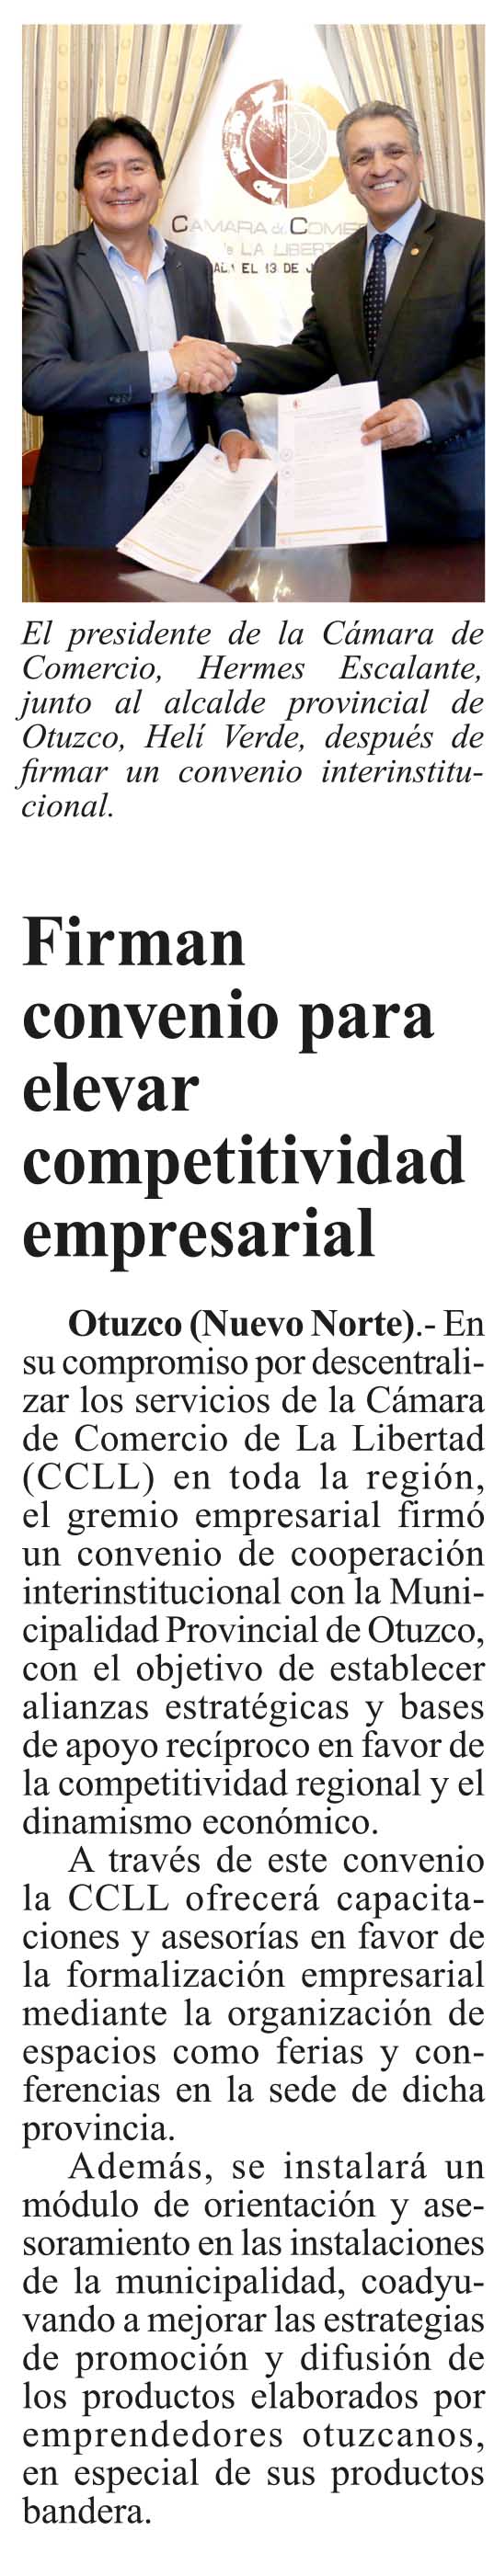 19.09.19.06 Nuevo Norte Firman convenio para elevar competitividad empresarial en Otuzco Cámara de Comercio de La Libertad CCLL